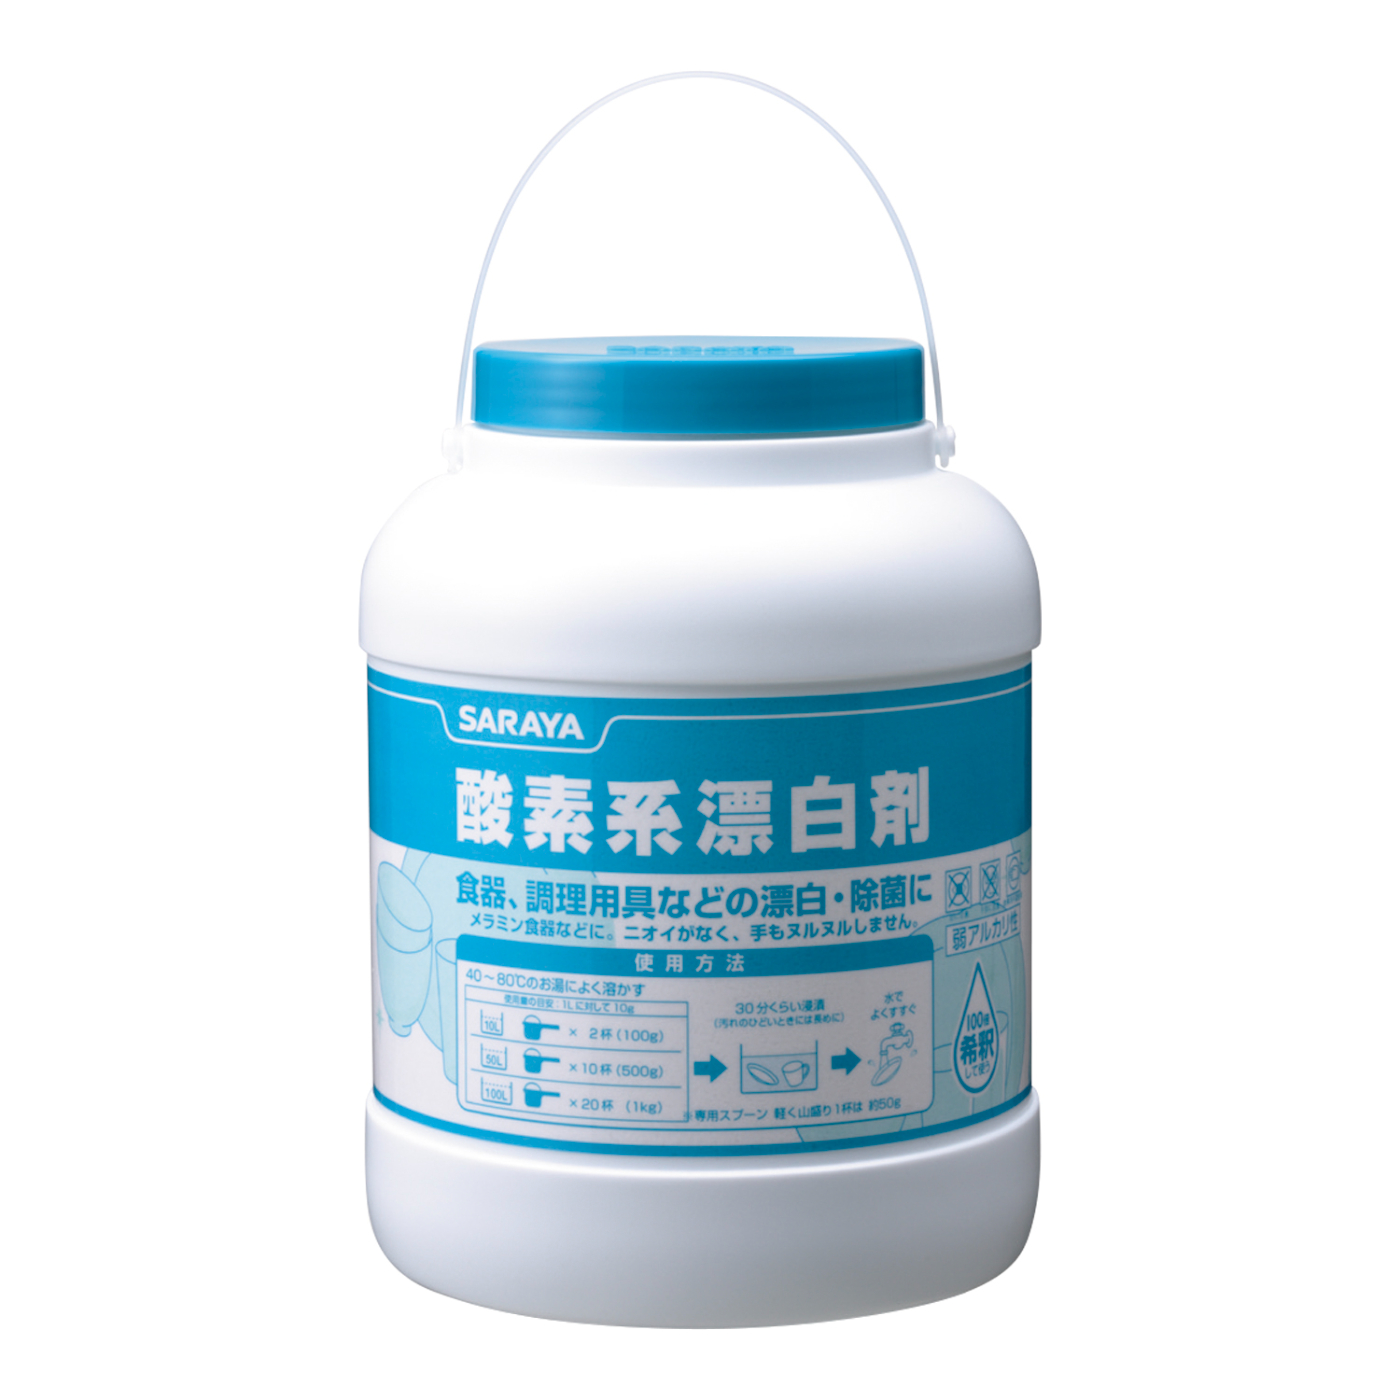 酸素系漂白剤 3kg | 酸素系漂白剤 | 製品情報 | サラヤ業務用製品情報 